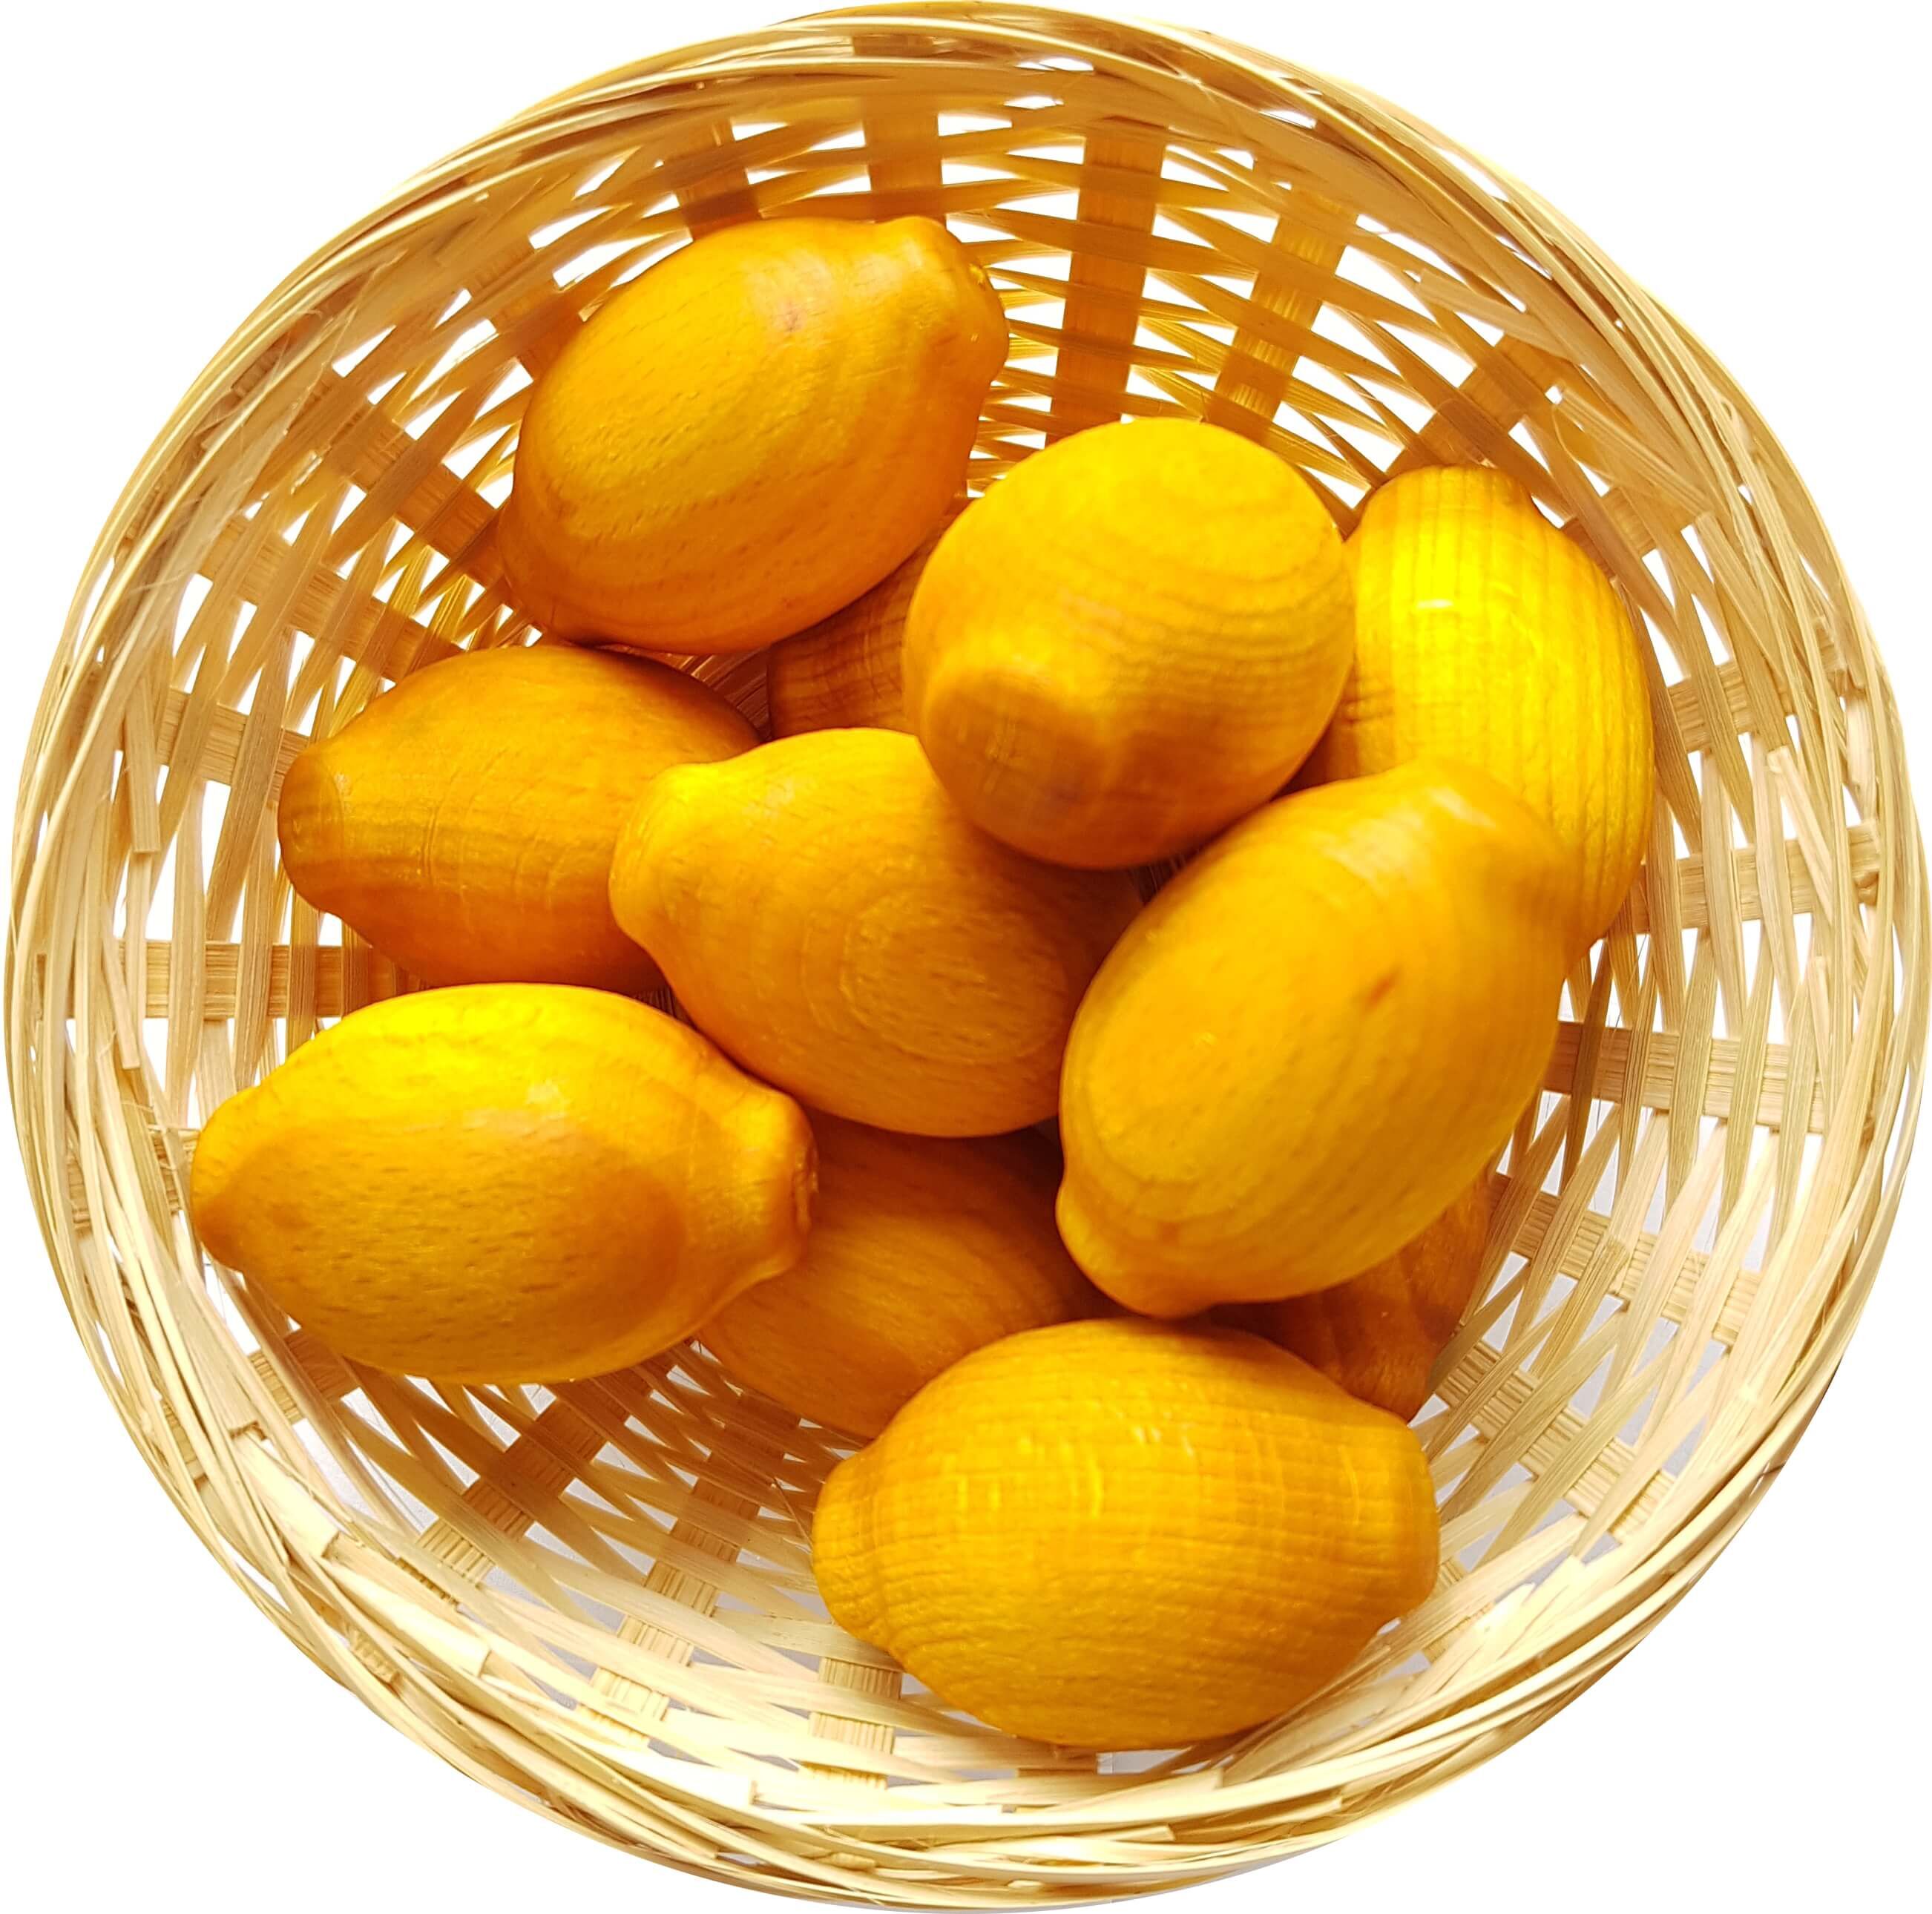 10x Zitrone Duftholz zur Lufterfrischung und Raumbeduftung - Dufthölzer - Duftfrüchte - Duftkugel